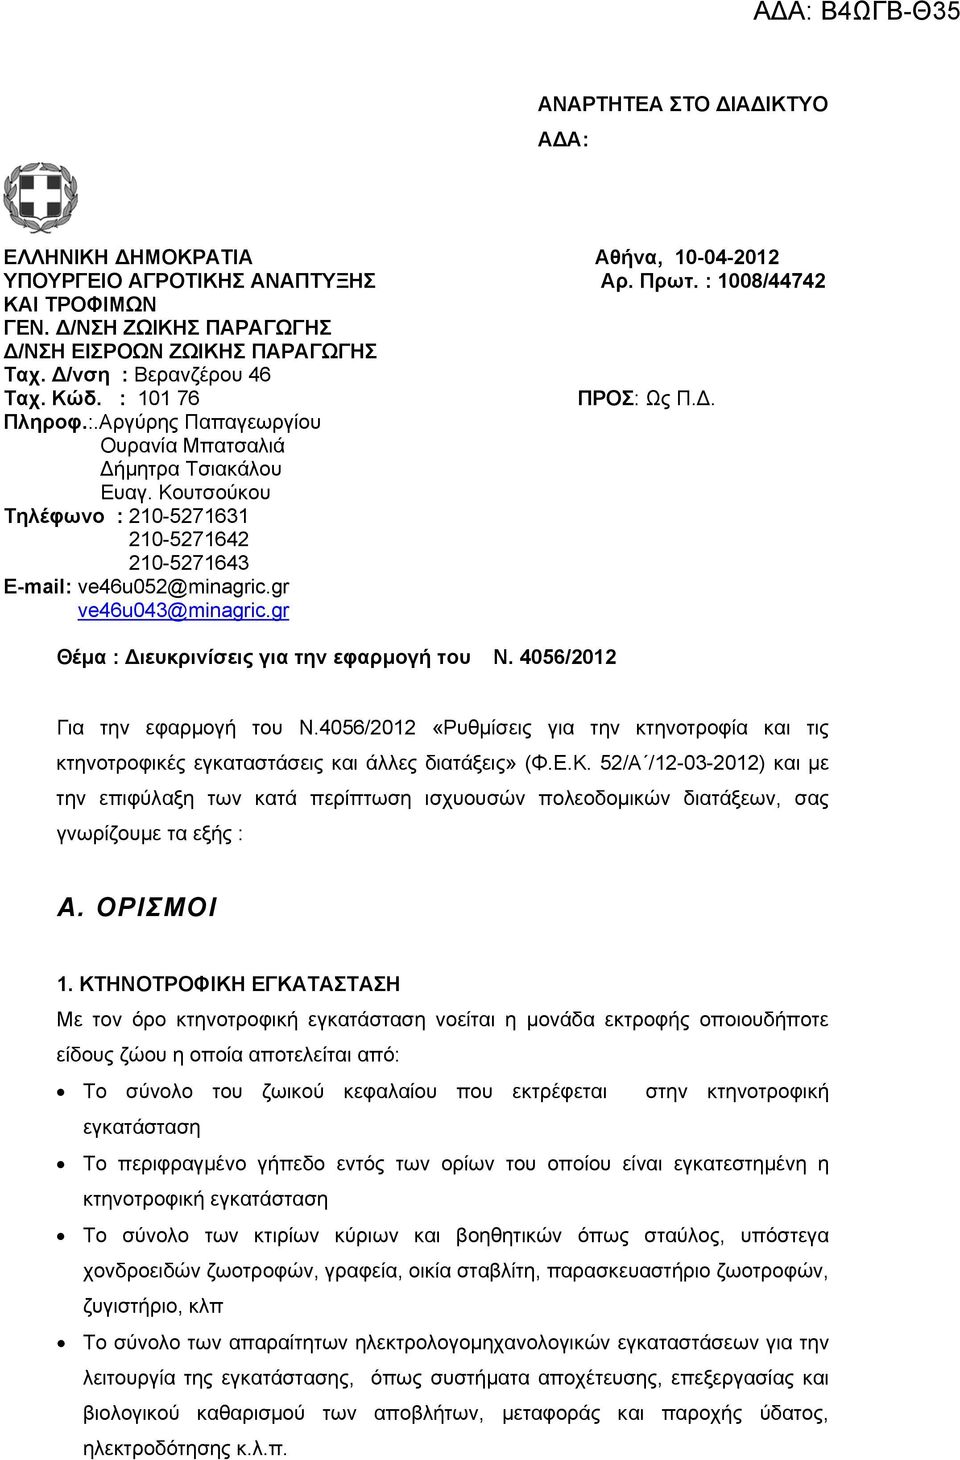 Κουτσούκου Τηλέφωνο : 210-5271631 210-5271642 210-5271643 Ε-mail: ve46u052@minagric.gr ve46u043@minagric.gr Θέμα : Διευκρινίσεις για την εφαρμογή του N. 4056/2012 Για την εφαρμογή του N.